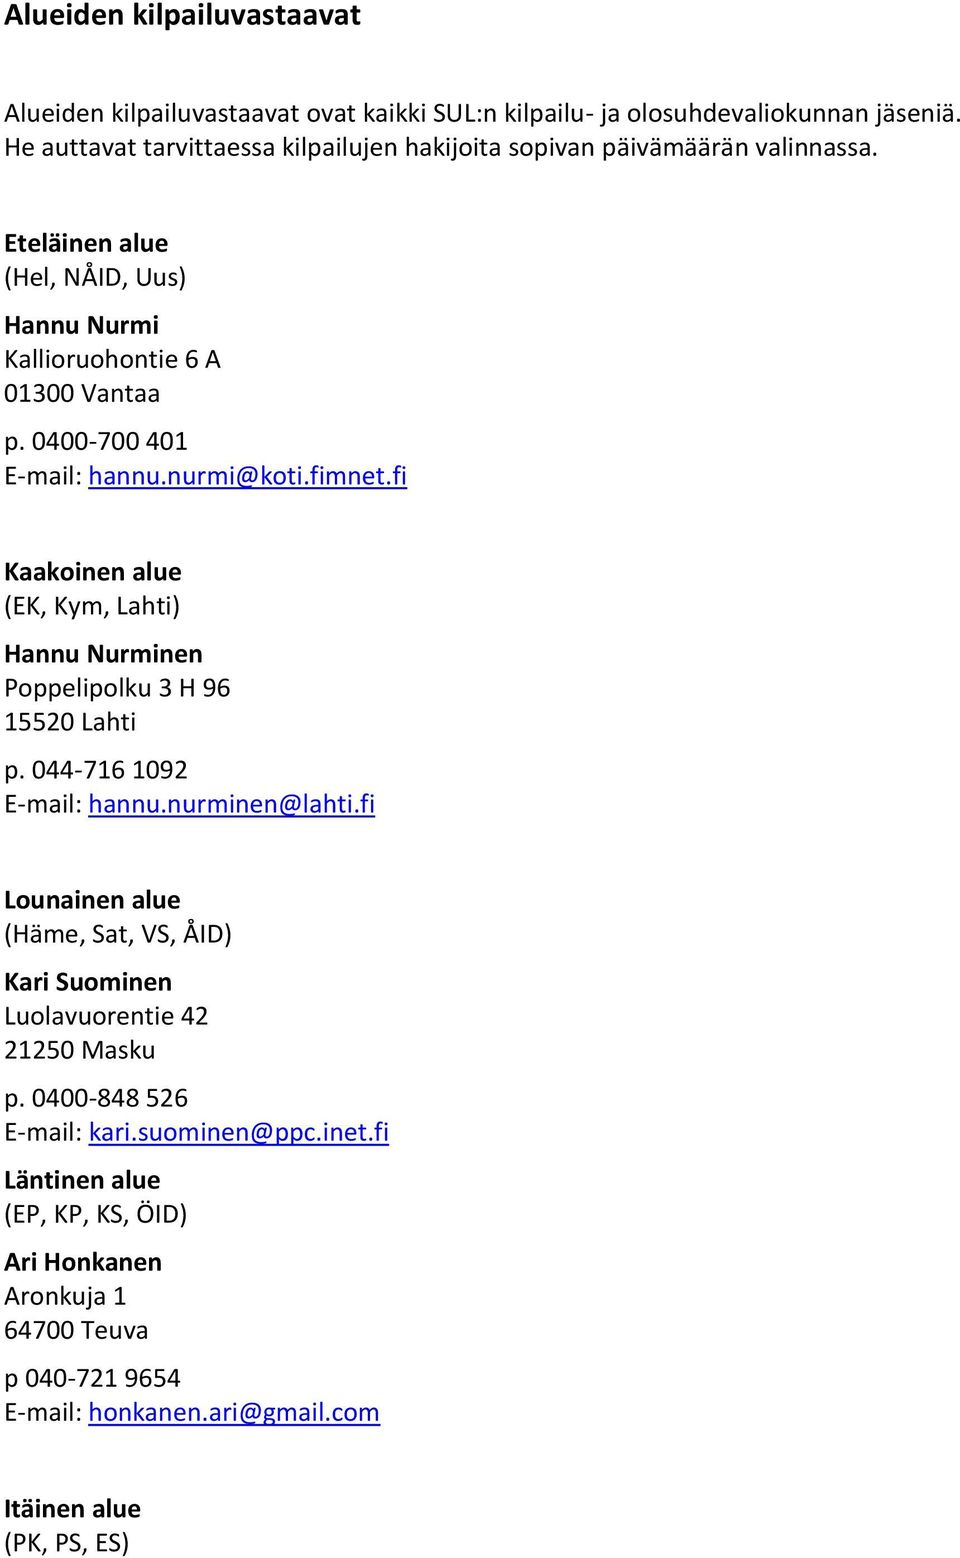 0400-700 401 E-mail: hannu.nurmi@koti.fimnet.fi Kaakoinen alue (EK, Kym, Lahti) Hannu Nurminen Poppelipolku 3 H 96 15520 Lahti p. 044-716 1092 E-mail: hannu.nurminen@lahti.